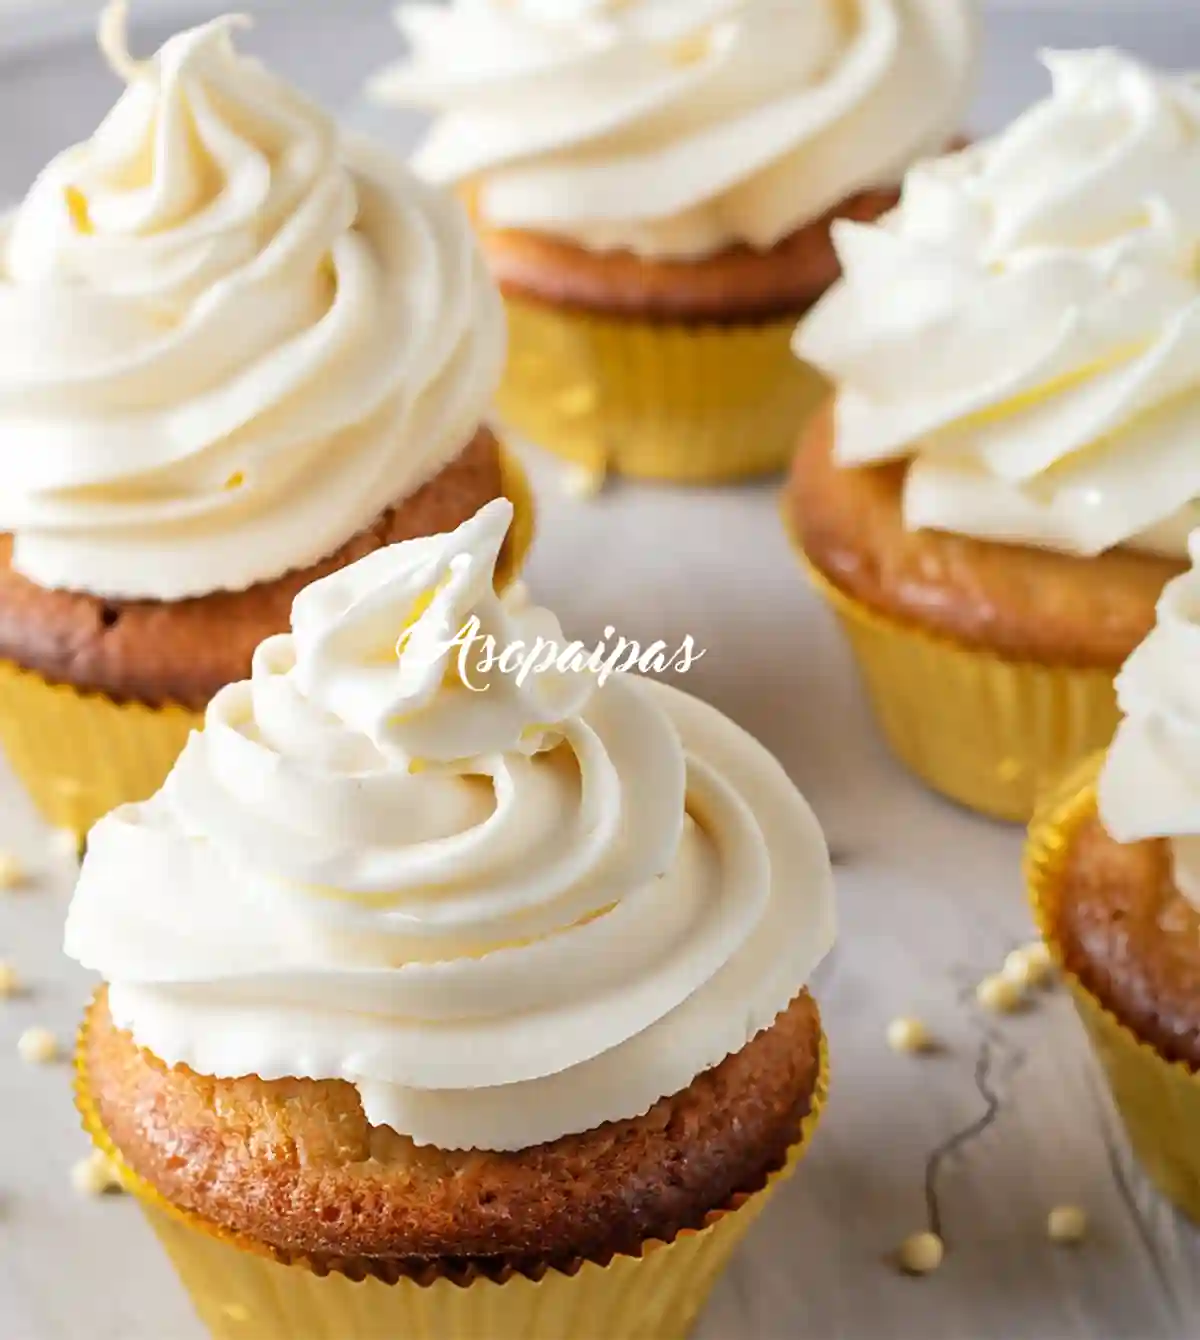 Imagen de los Cupcakes de Chocolate Blanco y Miel